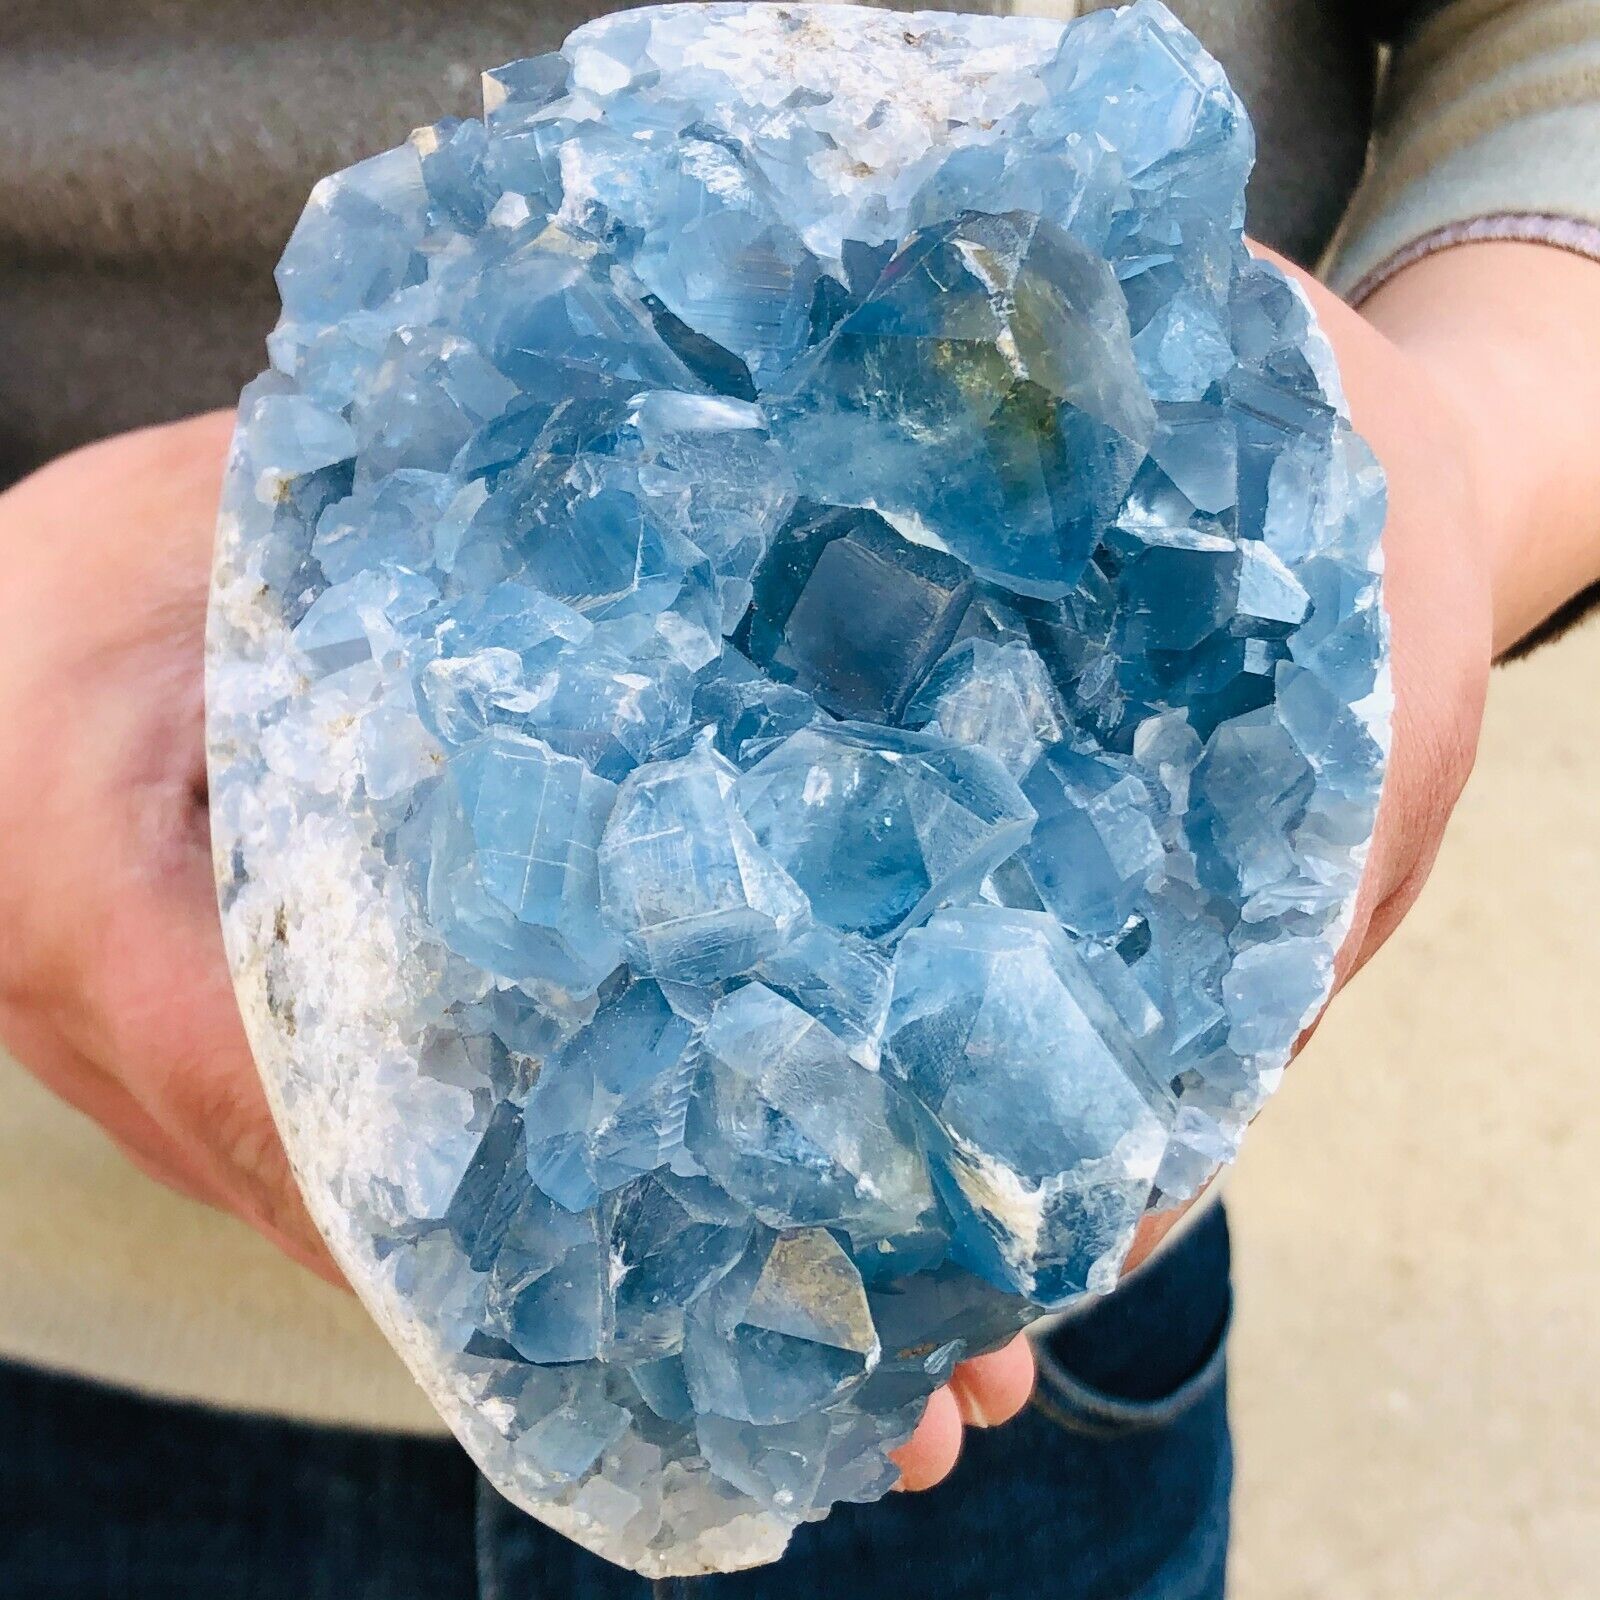 5.41lb Natural blue celestite geode quartz crystal mineral specimen healing